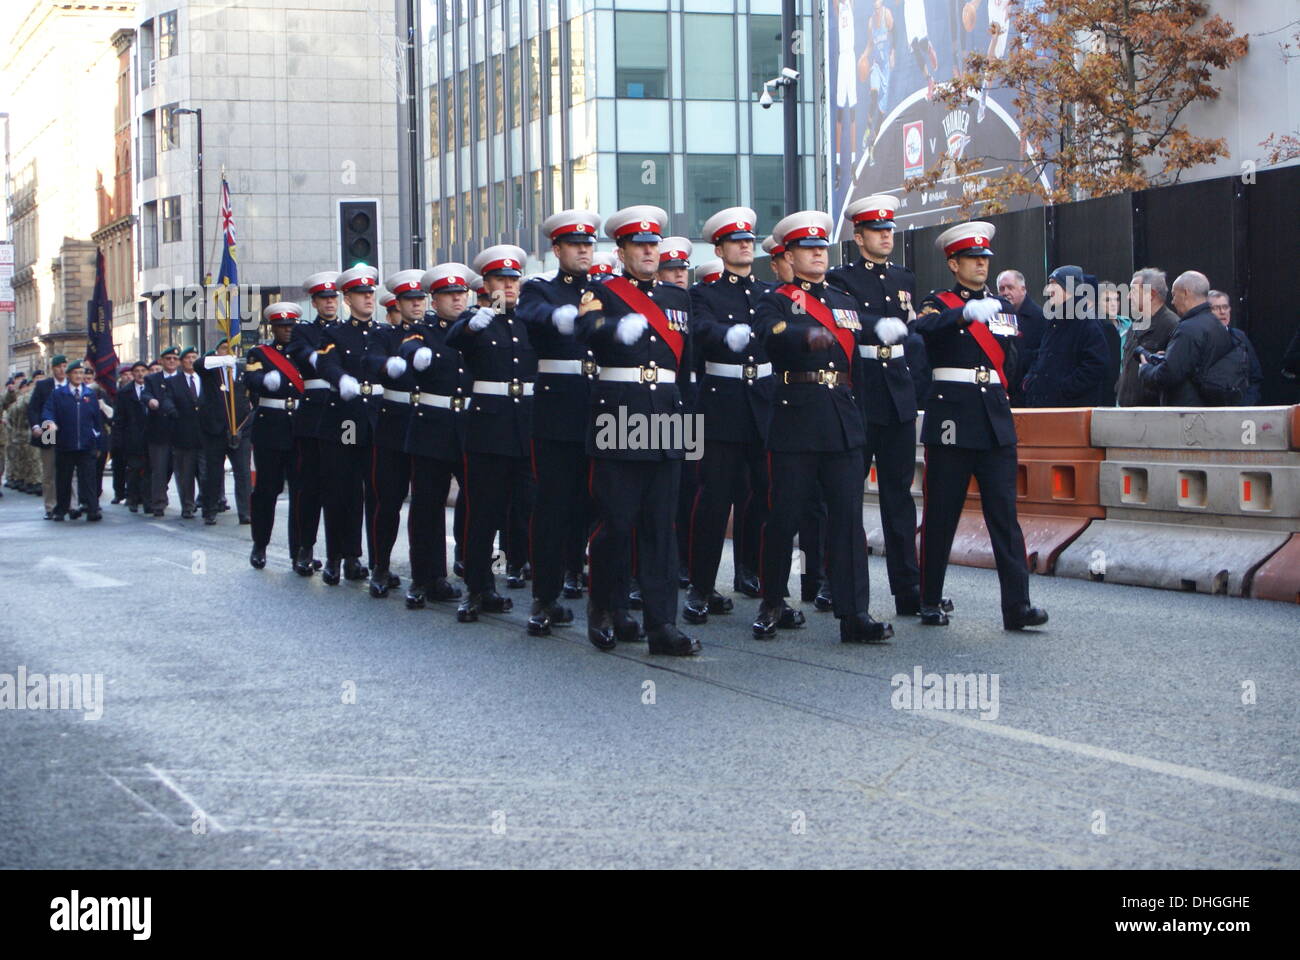 Militärischen Personal und Kriegsveteranen Marsch zum Ehrenmal in Manchester UK zu jener gedenken, die in vergangenen Kriegen und Konflikten gestorben. Sonntag, 10. November 2013 Stockfoto